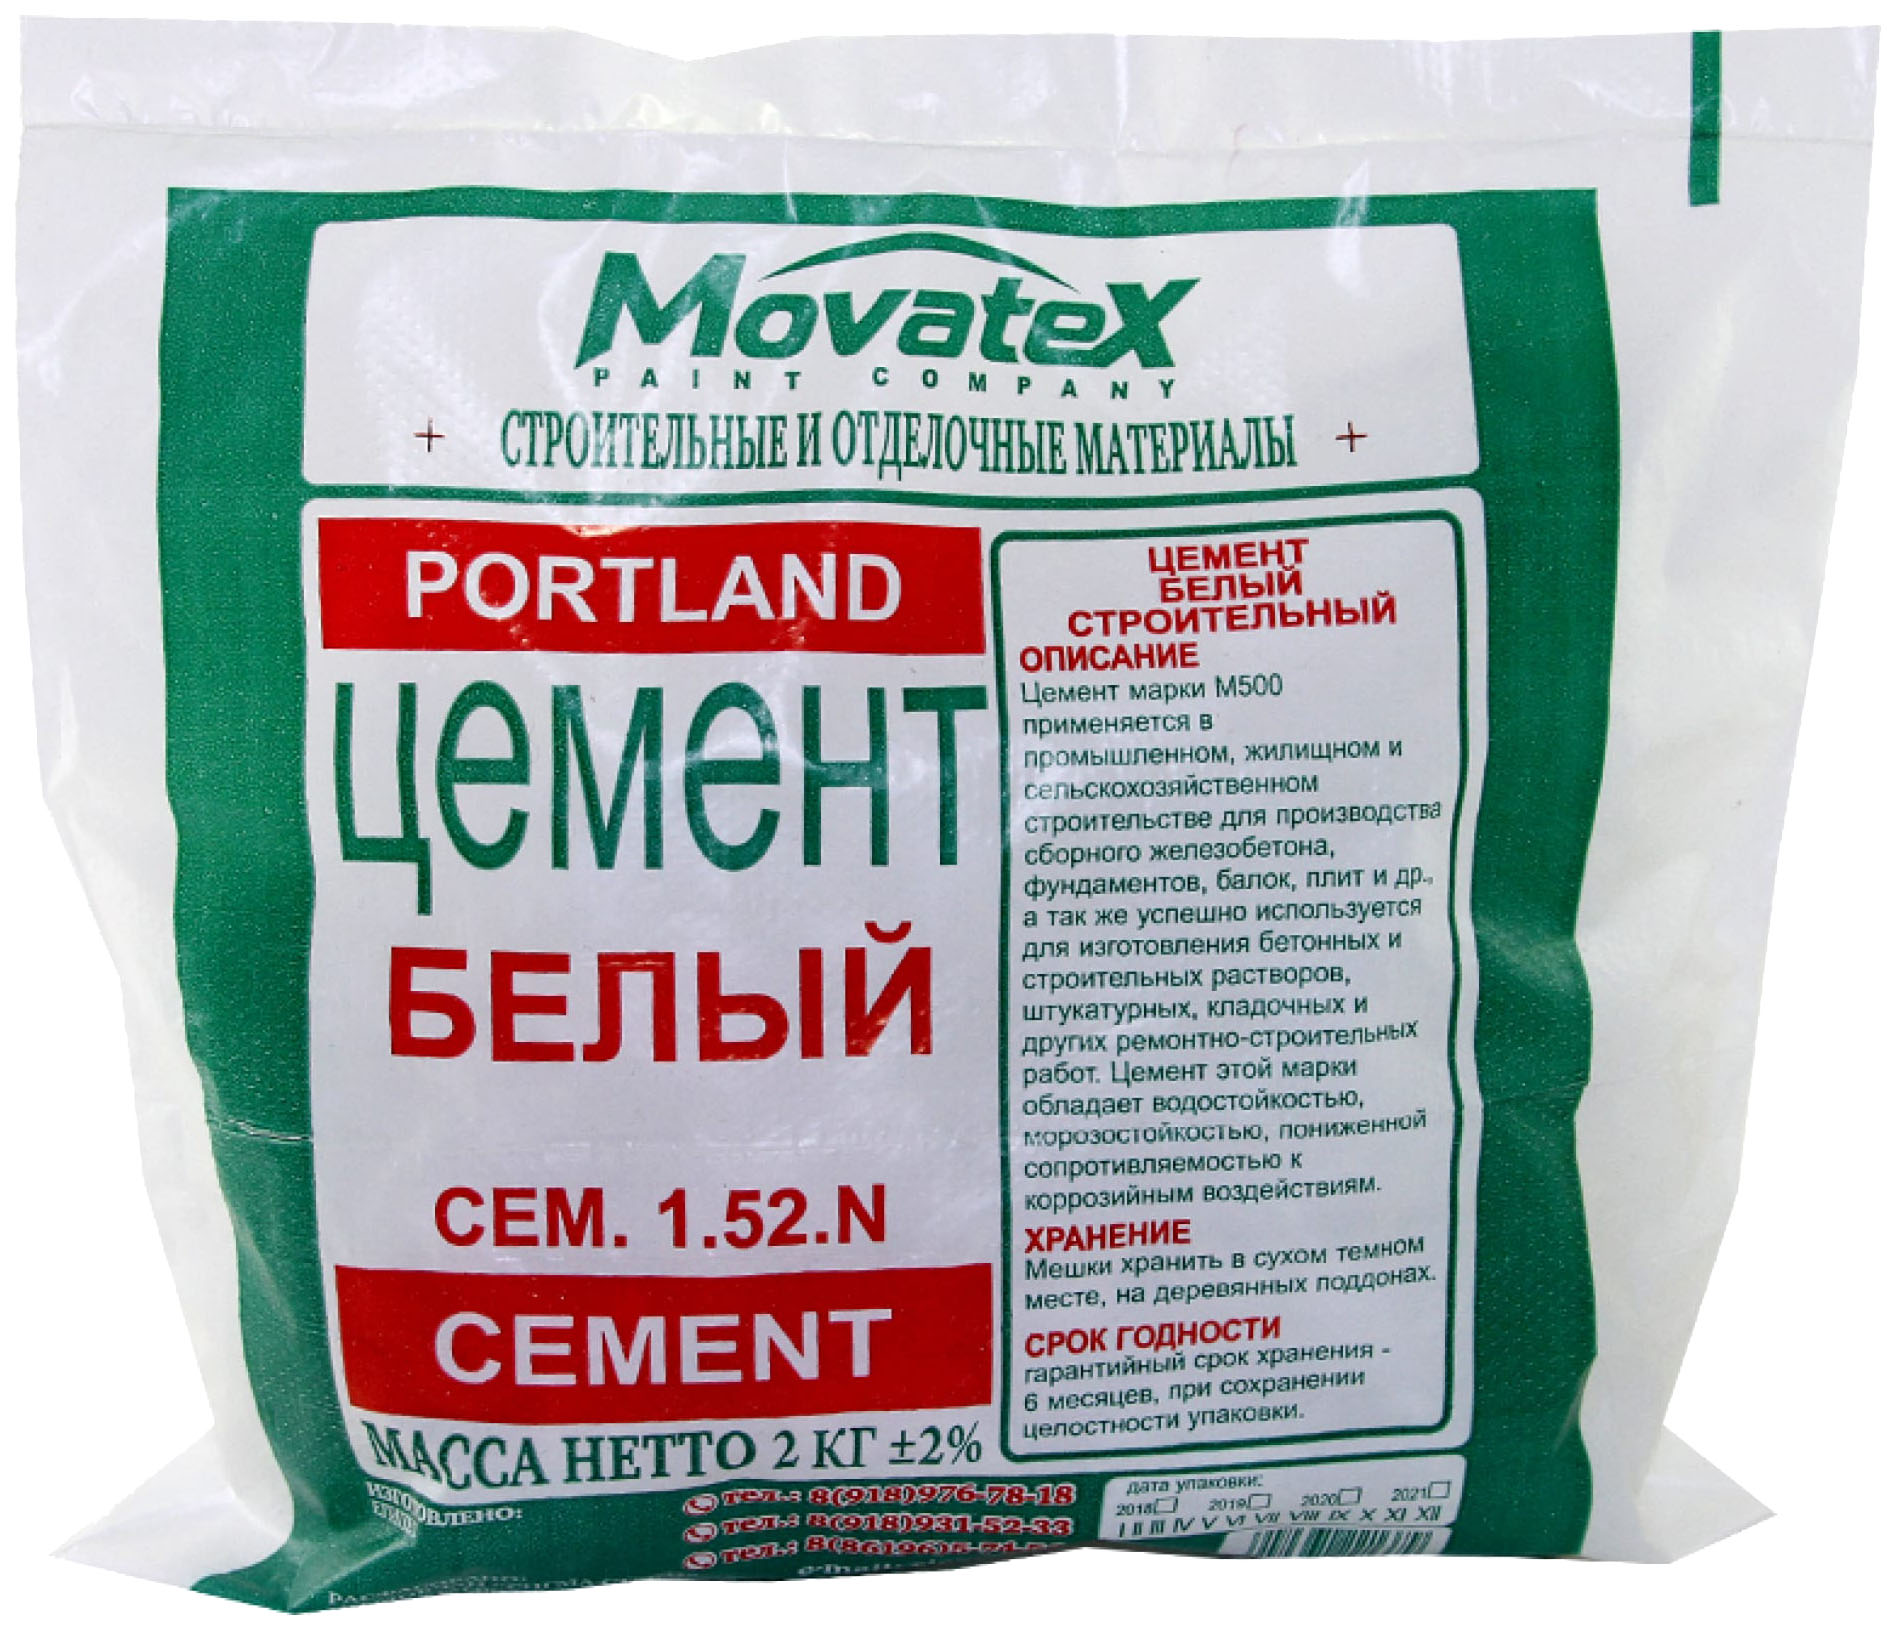 Movatex Цемент белый 2кг Т02379